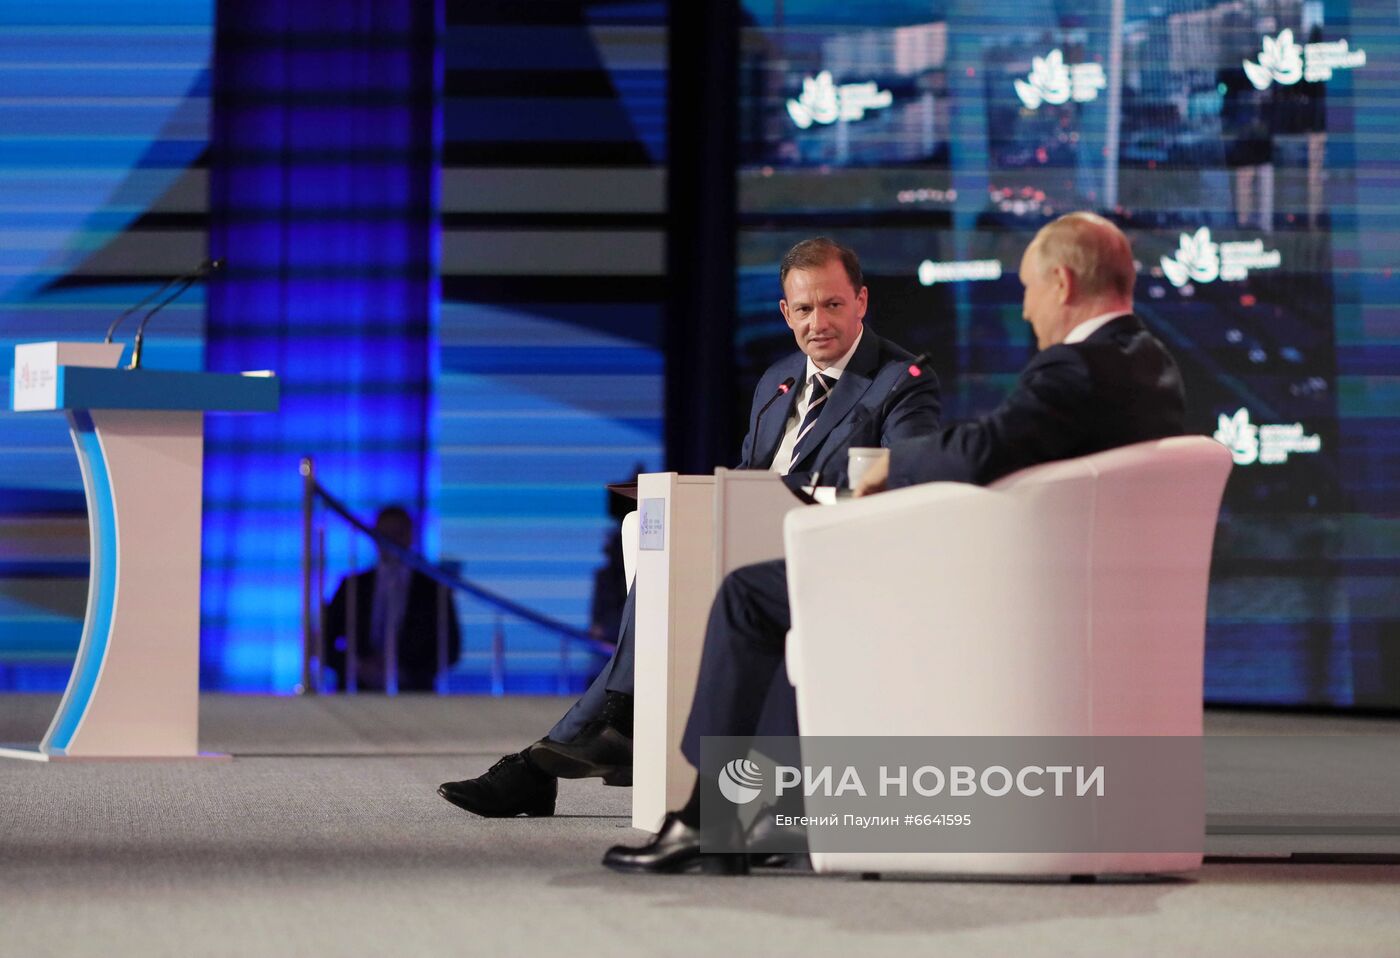 Президент РФ В. Путин принял участие в работе Восточного экономического форума